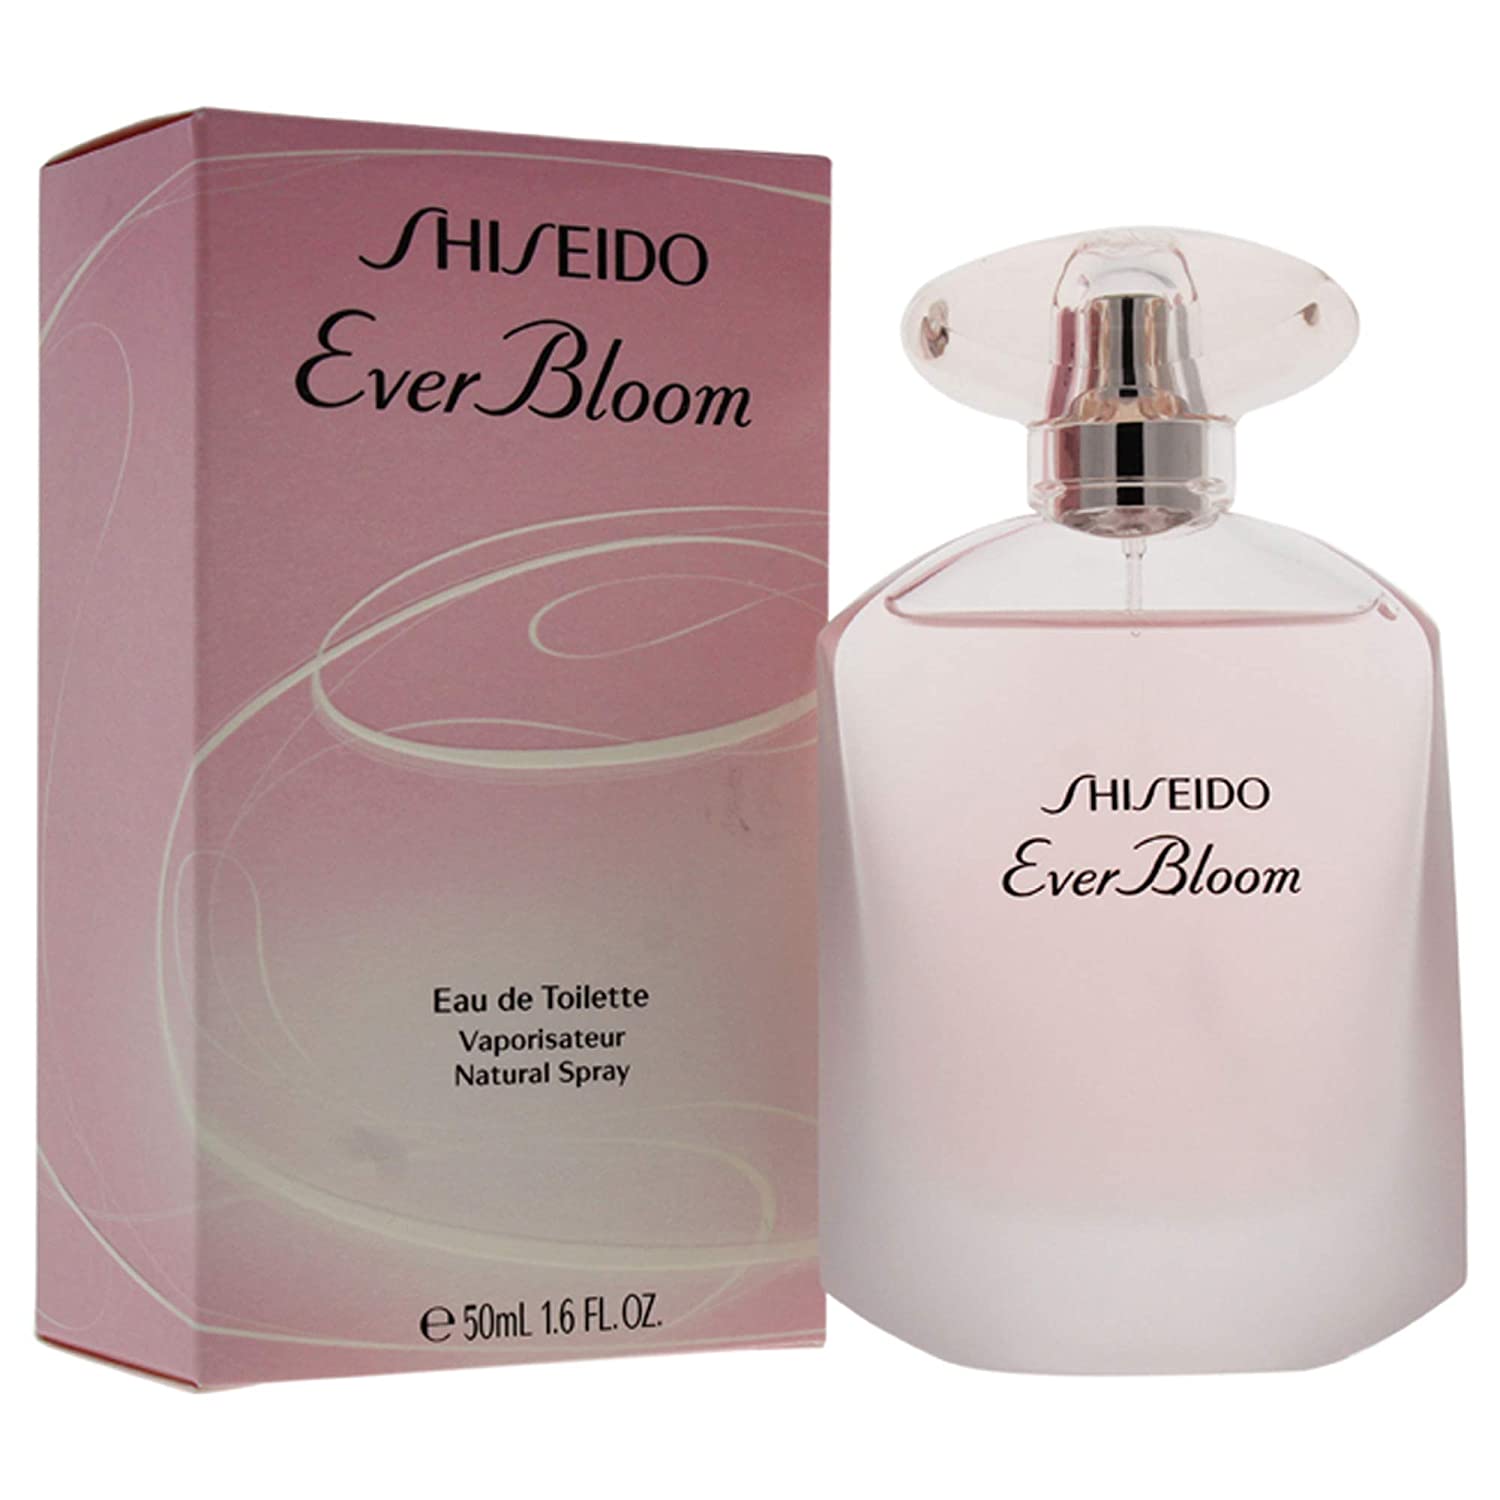 Ever Bloom by Shiseido for Women - Eau de Toilette Spray